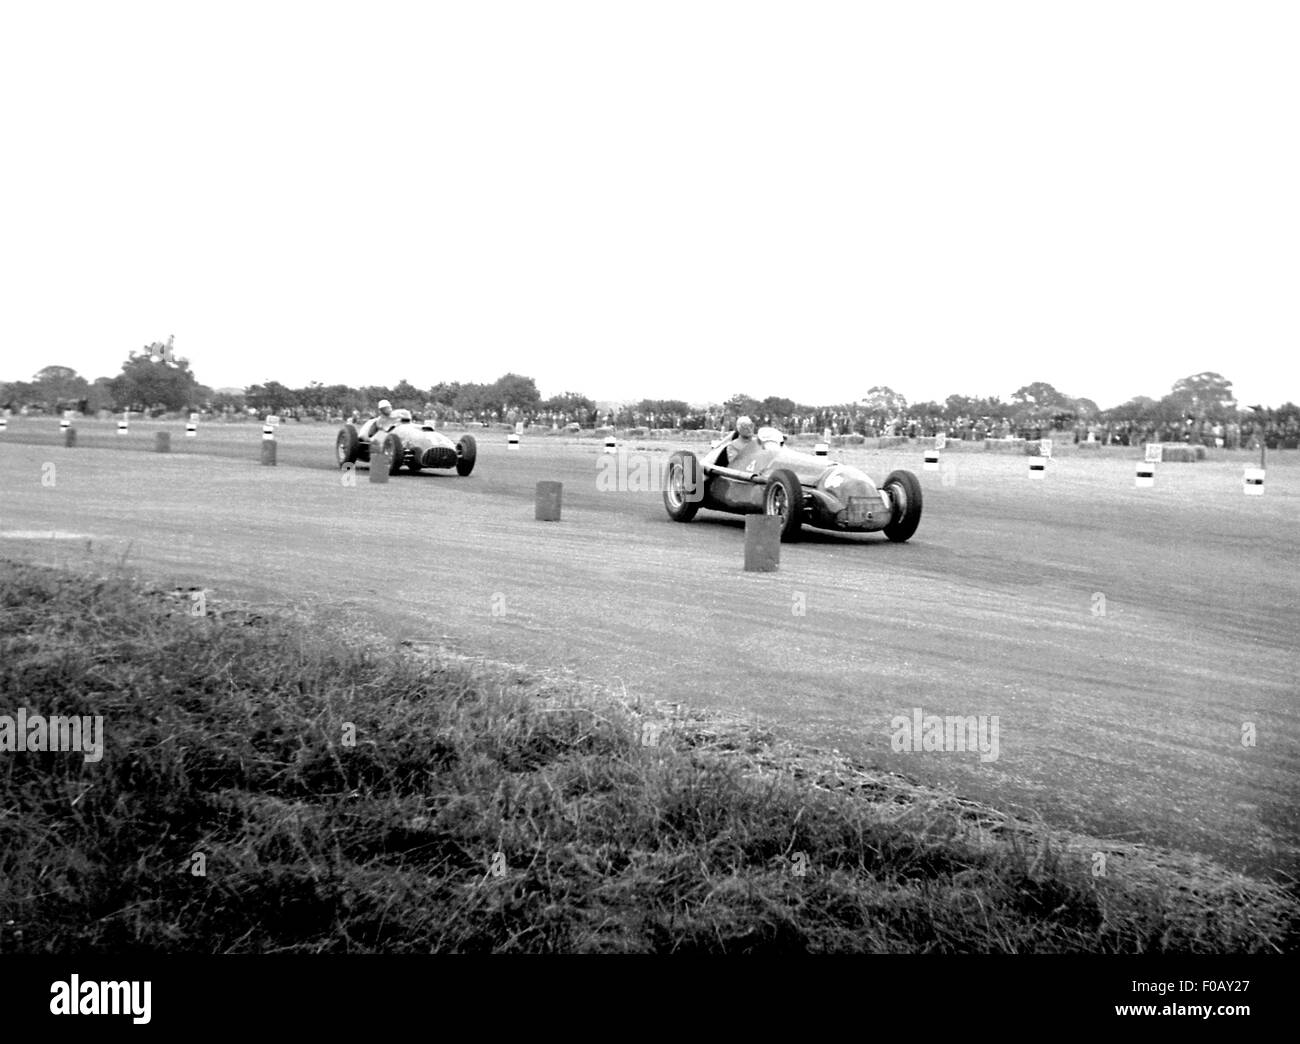 ALFA ROMEO 158 gegen FERRARI 375, GP von Belgien Spa 1950 Stockfoto